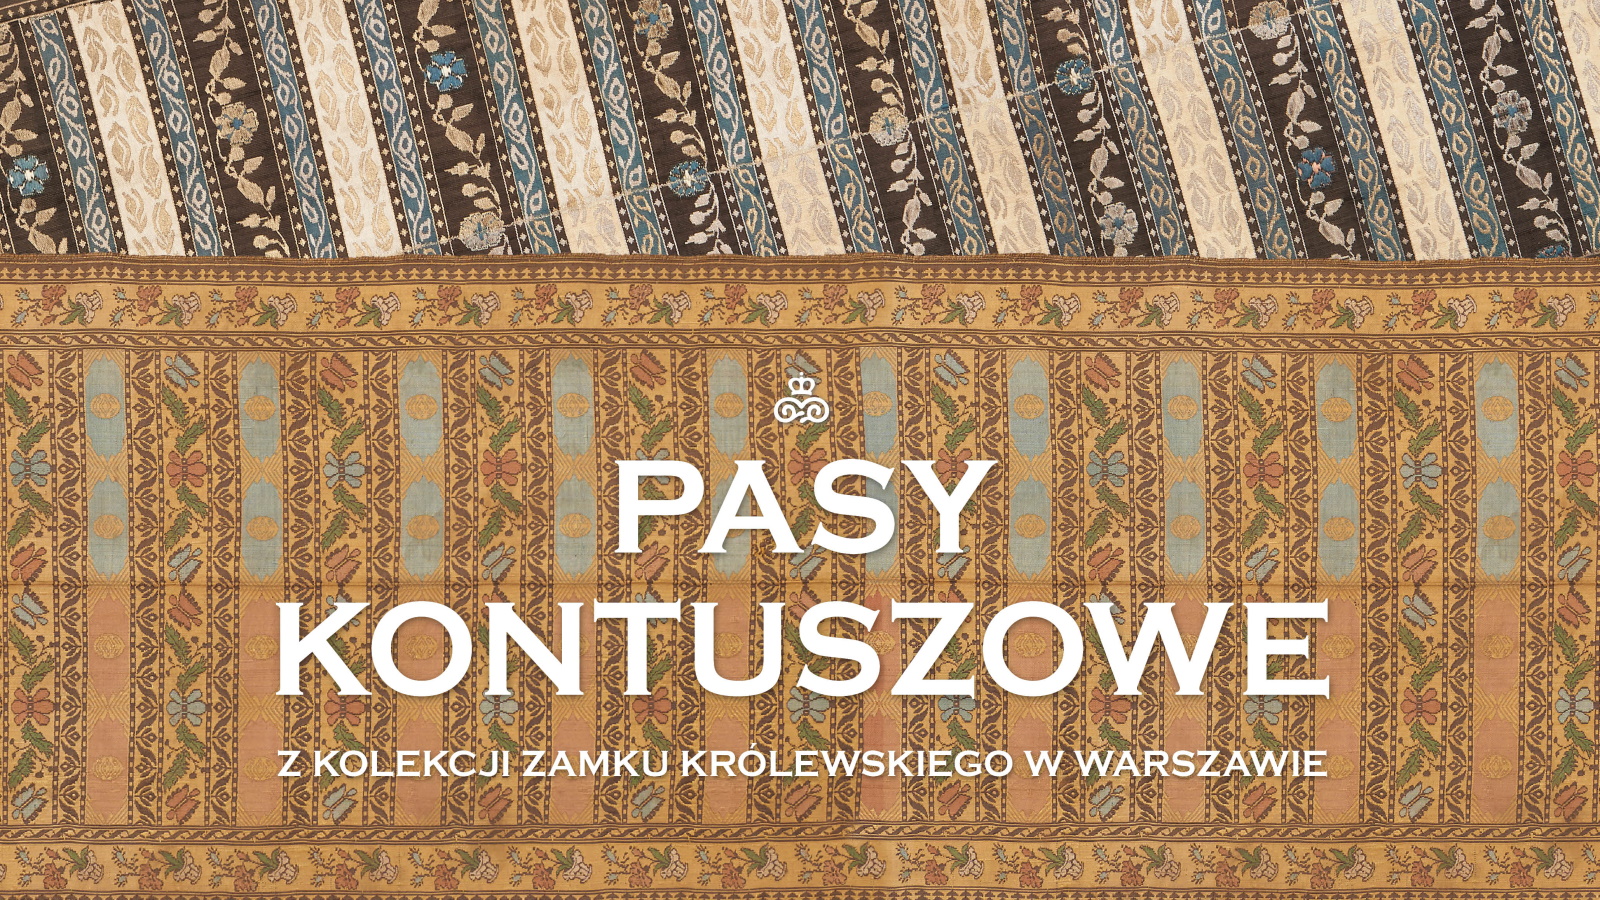 Pasy kontuszowe z kolekcji Zamku Królewskiego w Warszawie